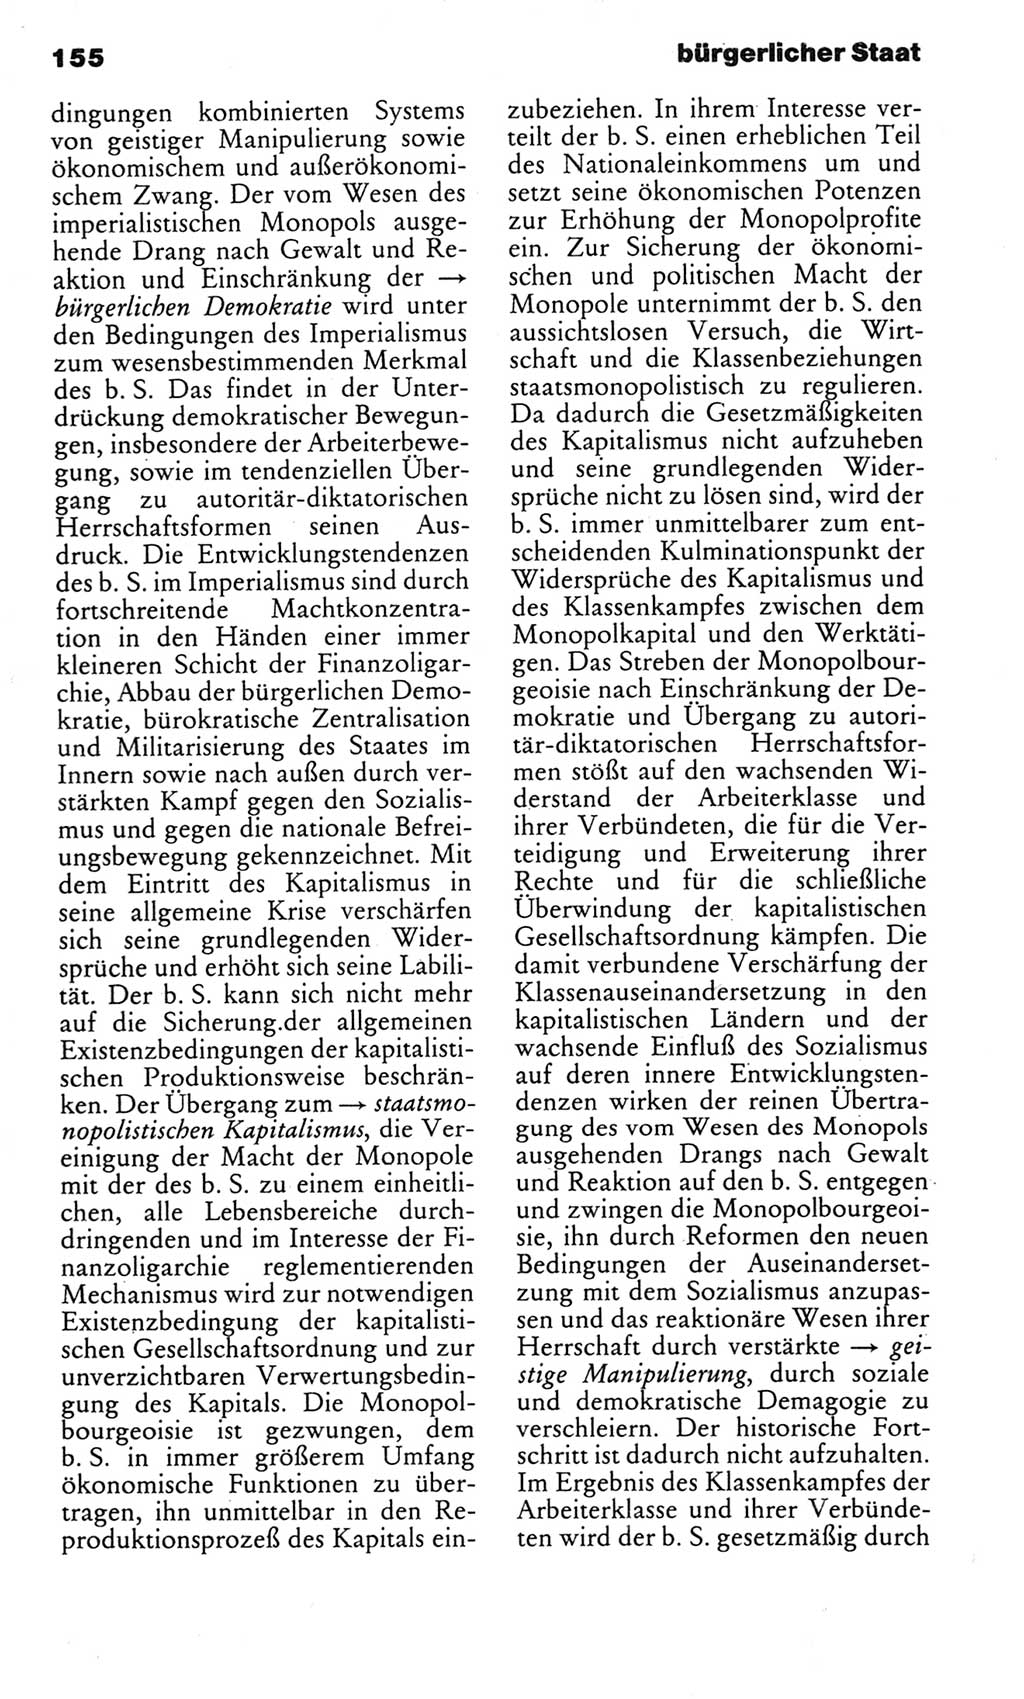 Kleines politisches Wörterbuch [Deutsche Demokratische Republik (DDR)] 1985, Seite 155 (Kl. pol. Wb. DDR 1985, S. 155)